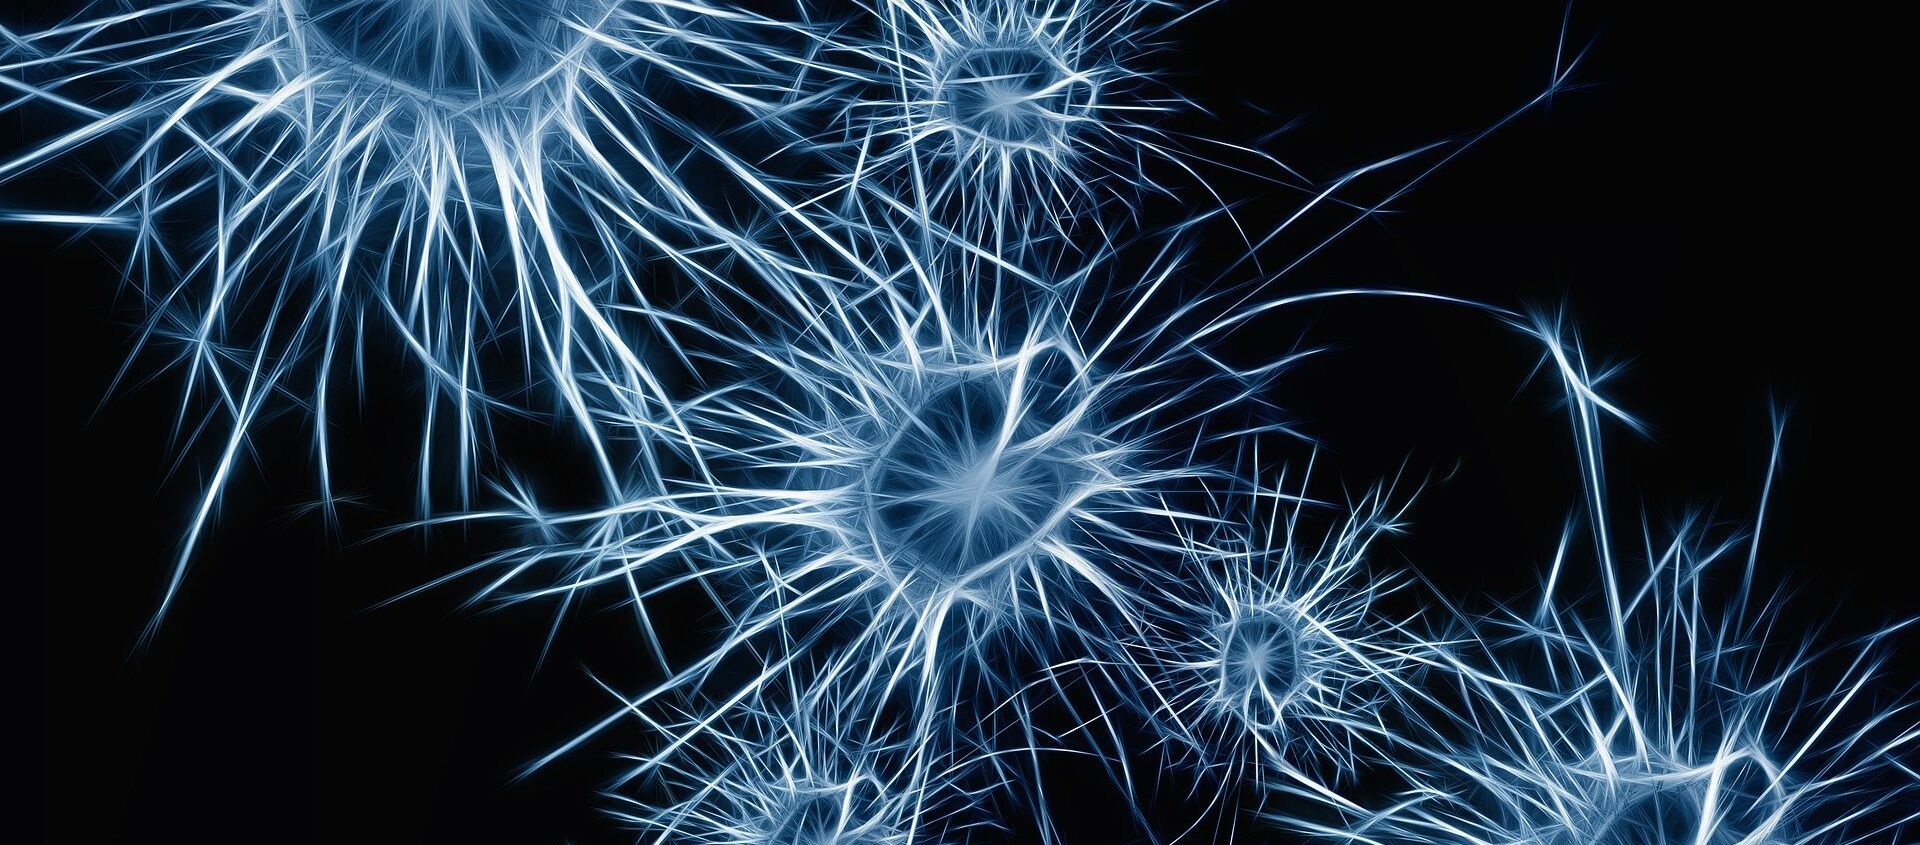 Neuronas (imagen referencial) - Sputnik Mundo, 1920, 19.01.2021